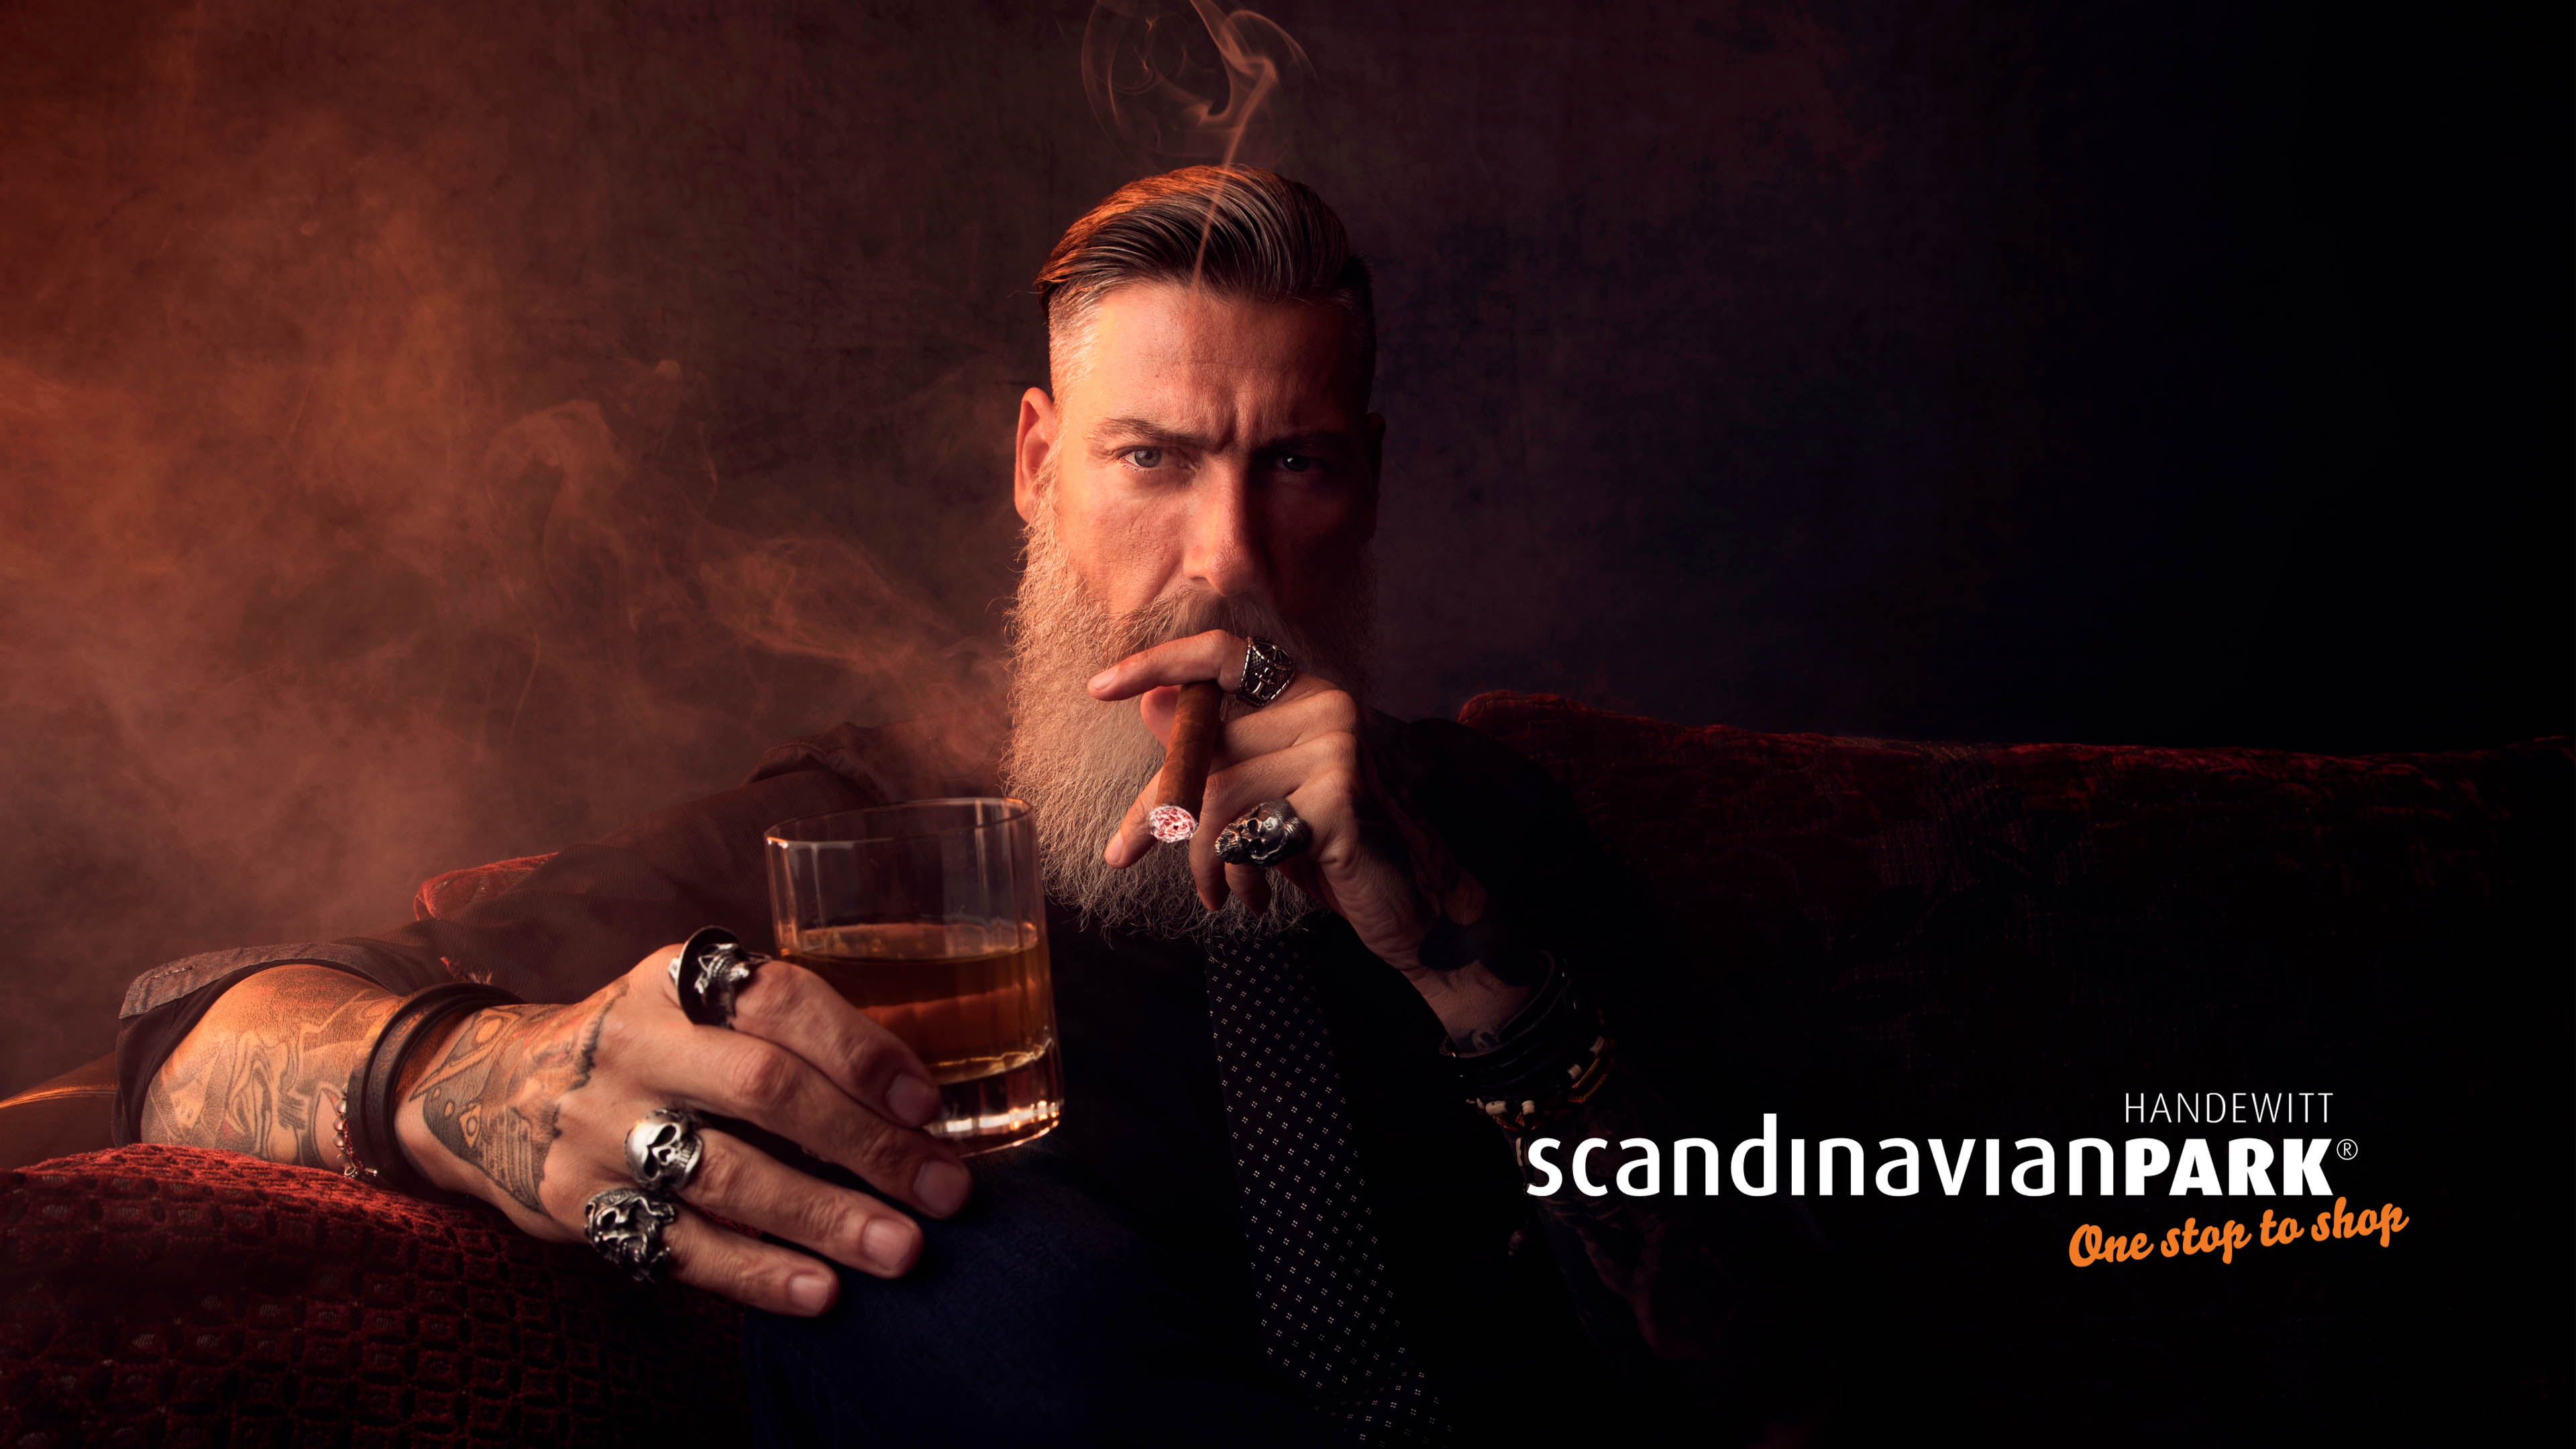 Bärtiger Mann raucht eine Cigarre und trinkt einen Whiskey